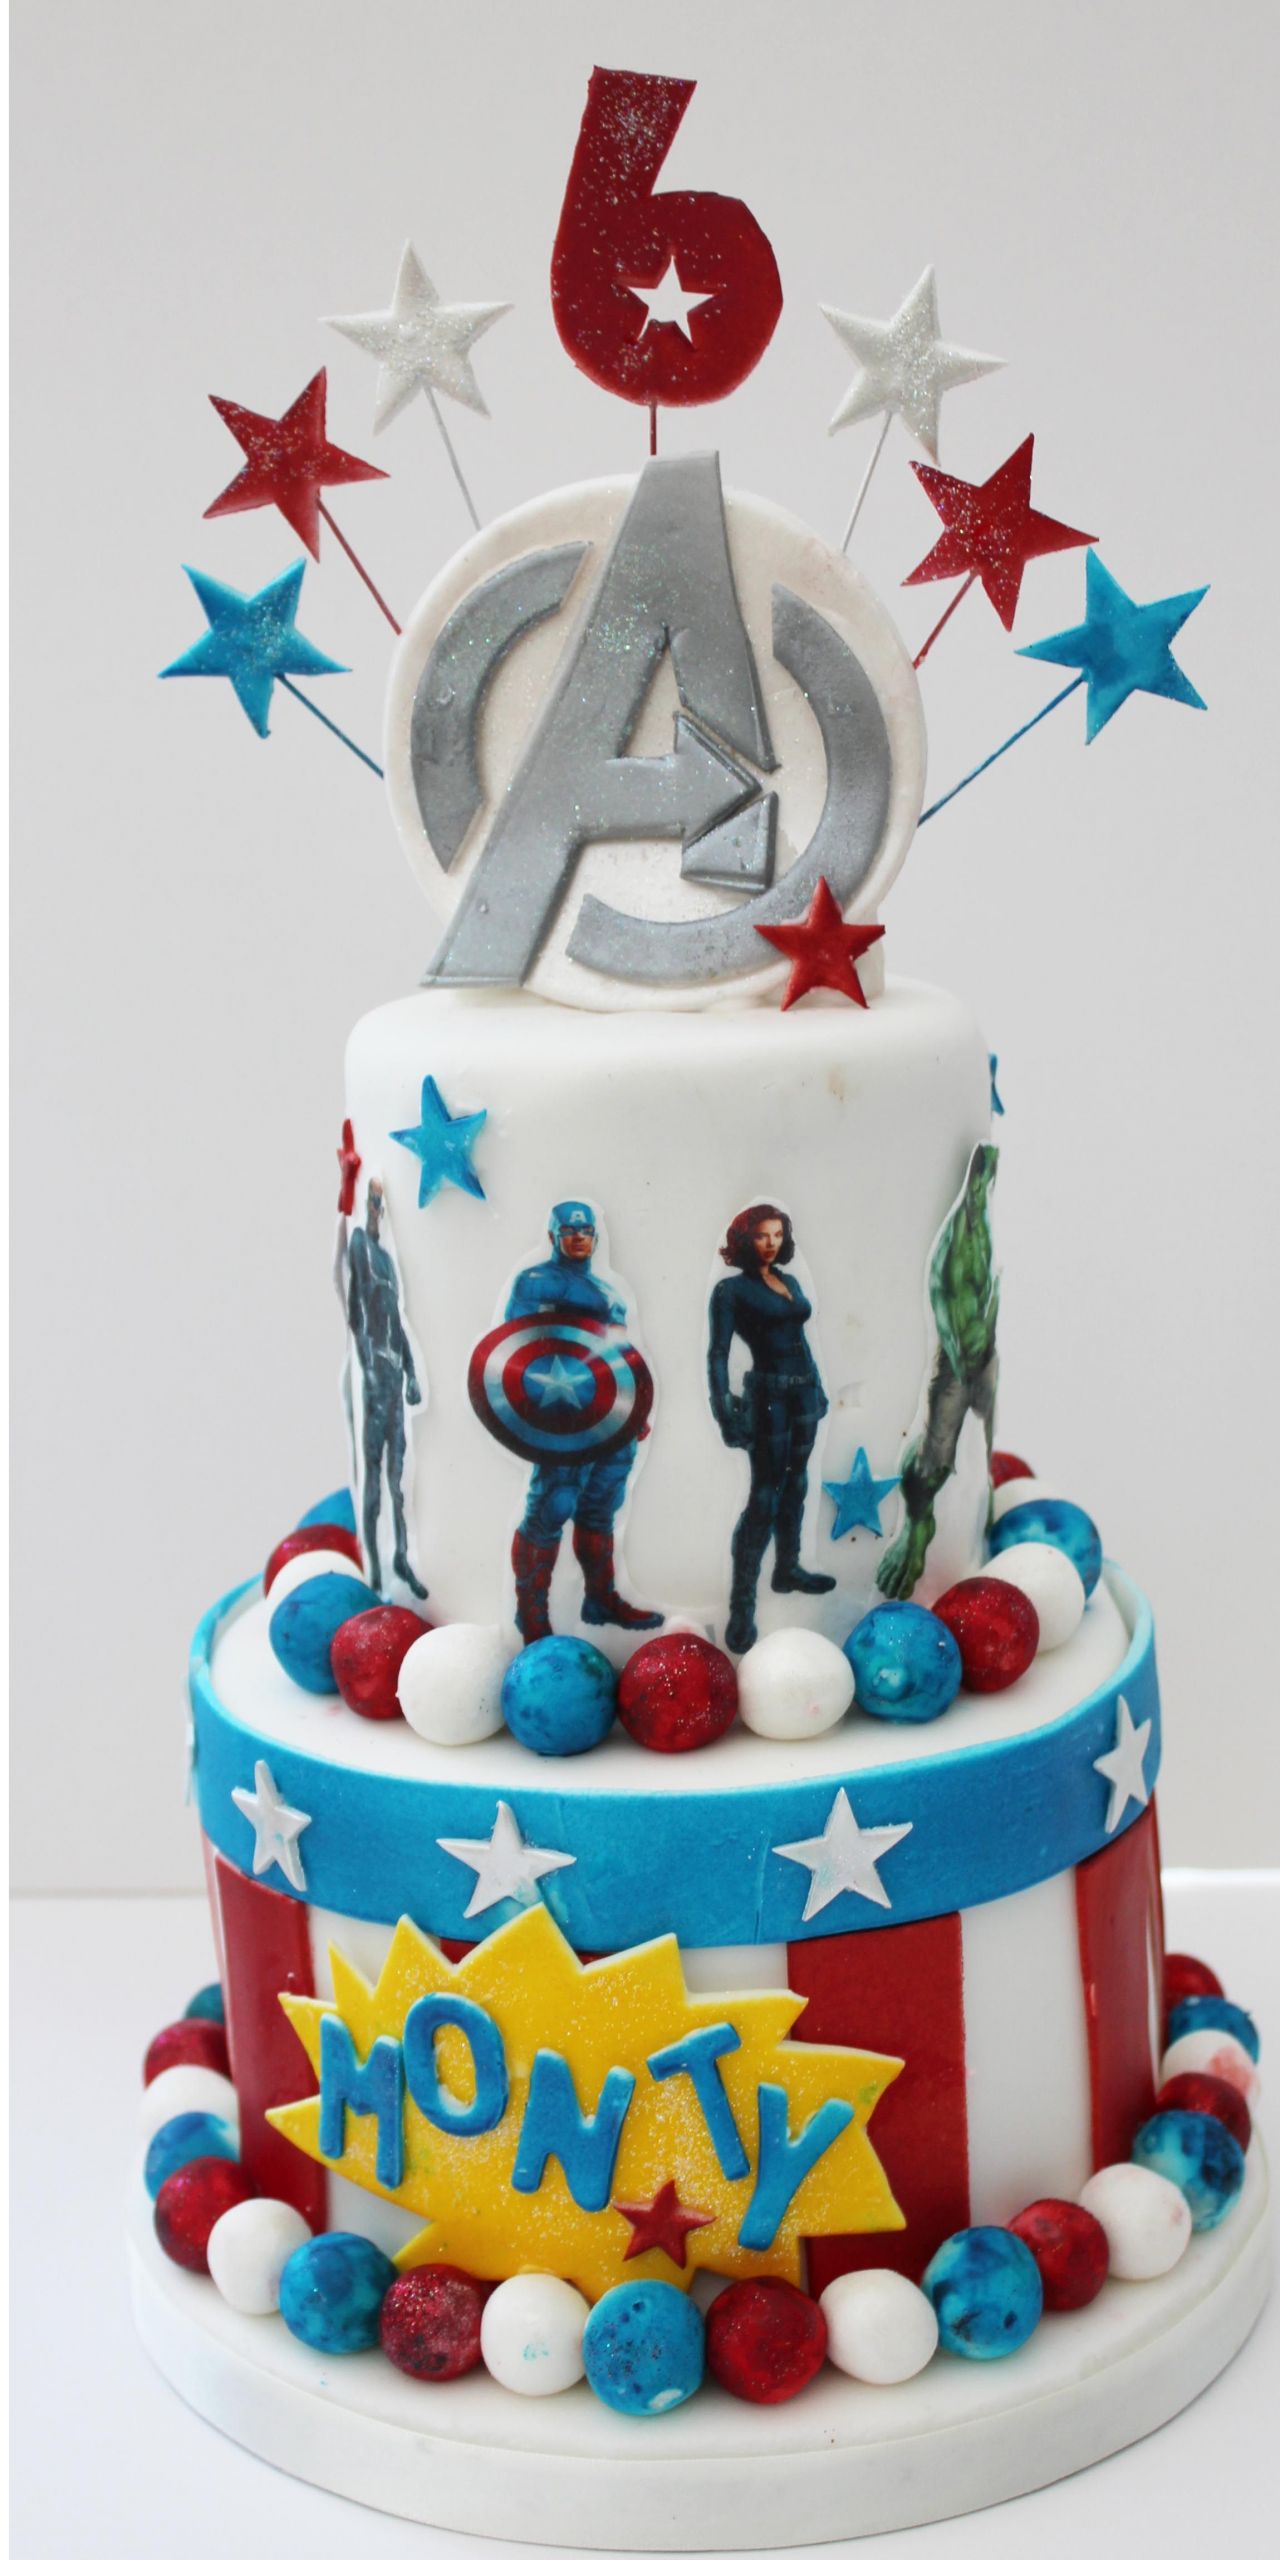 Avengers Birthday Cakes
 Avengers birthday cake